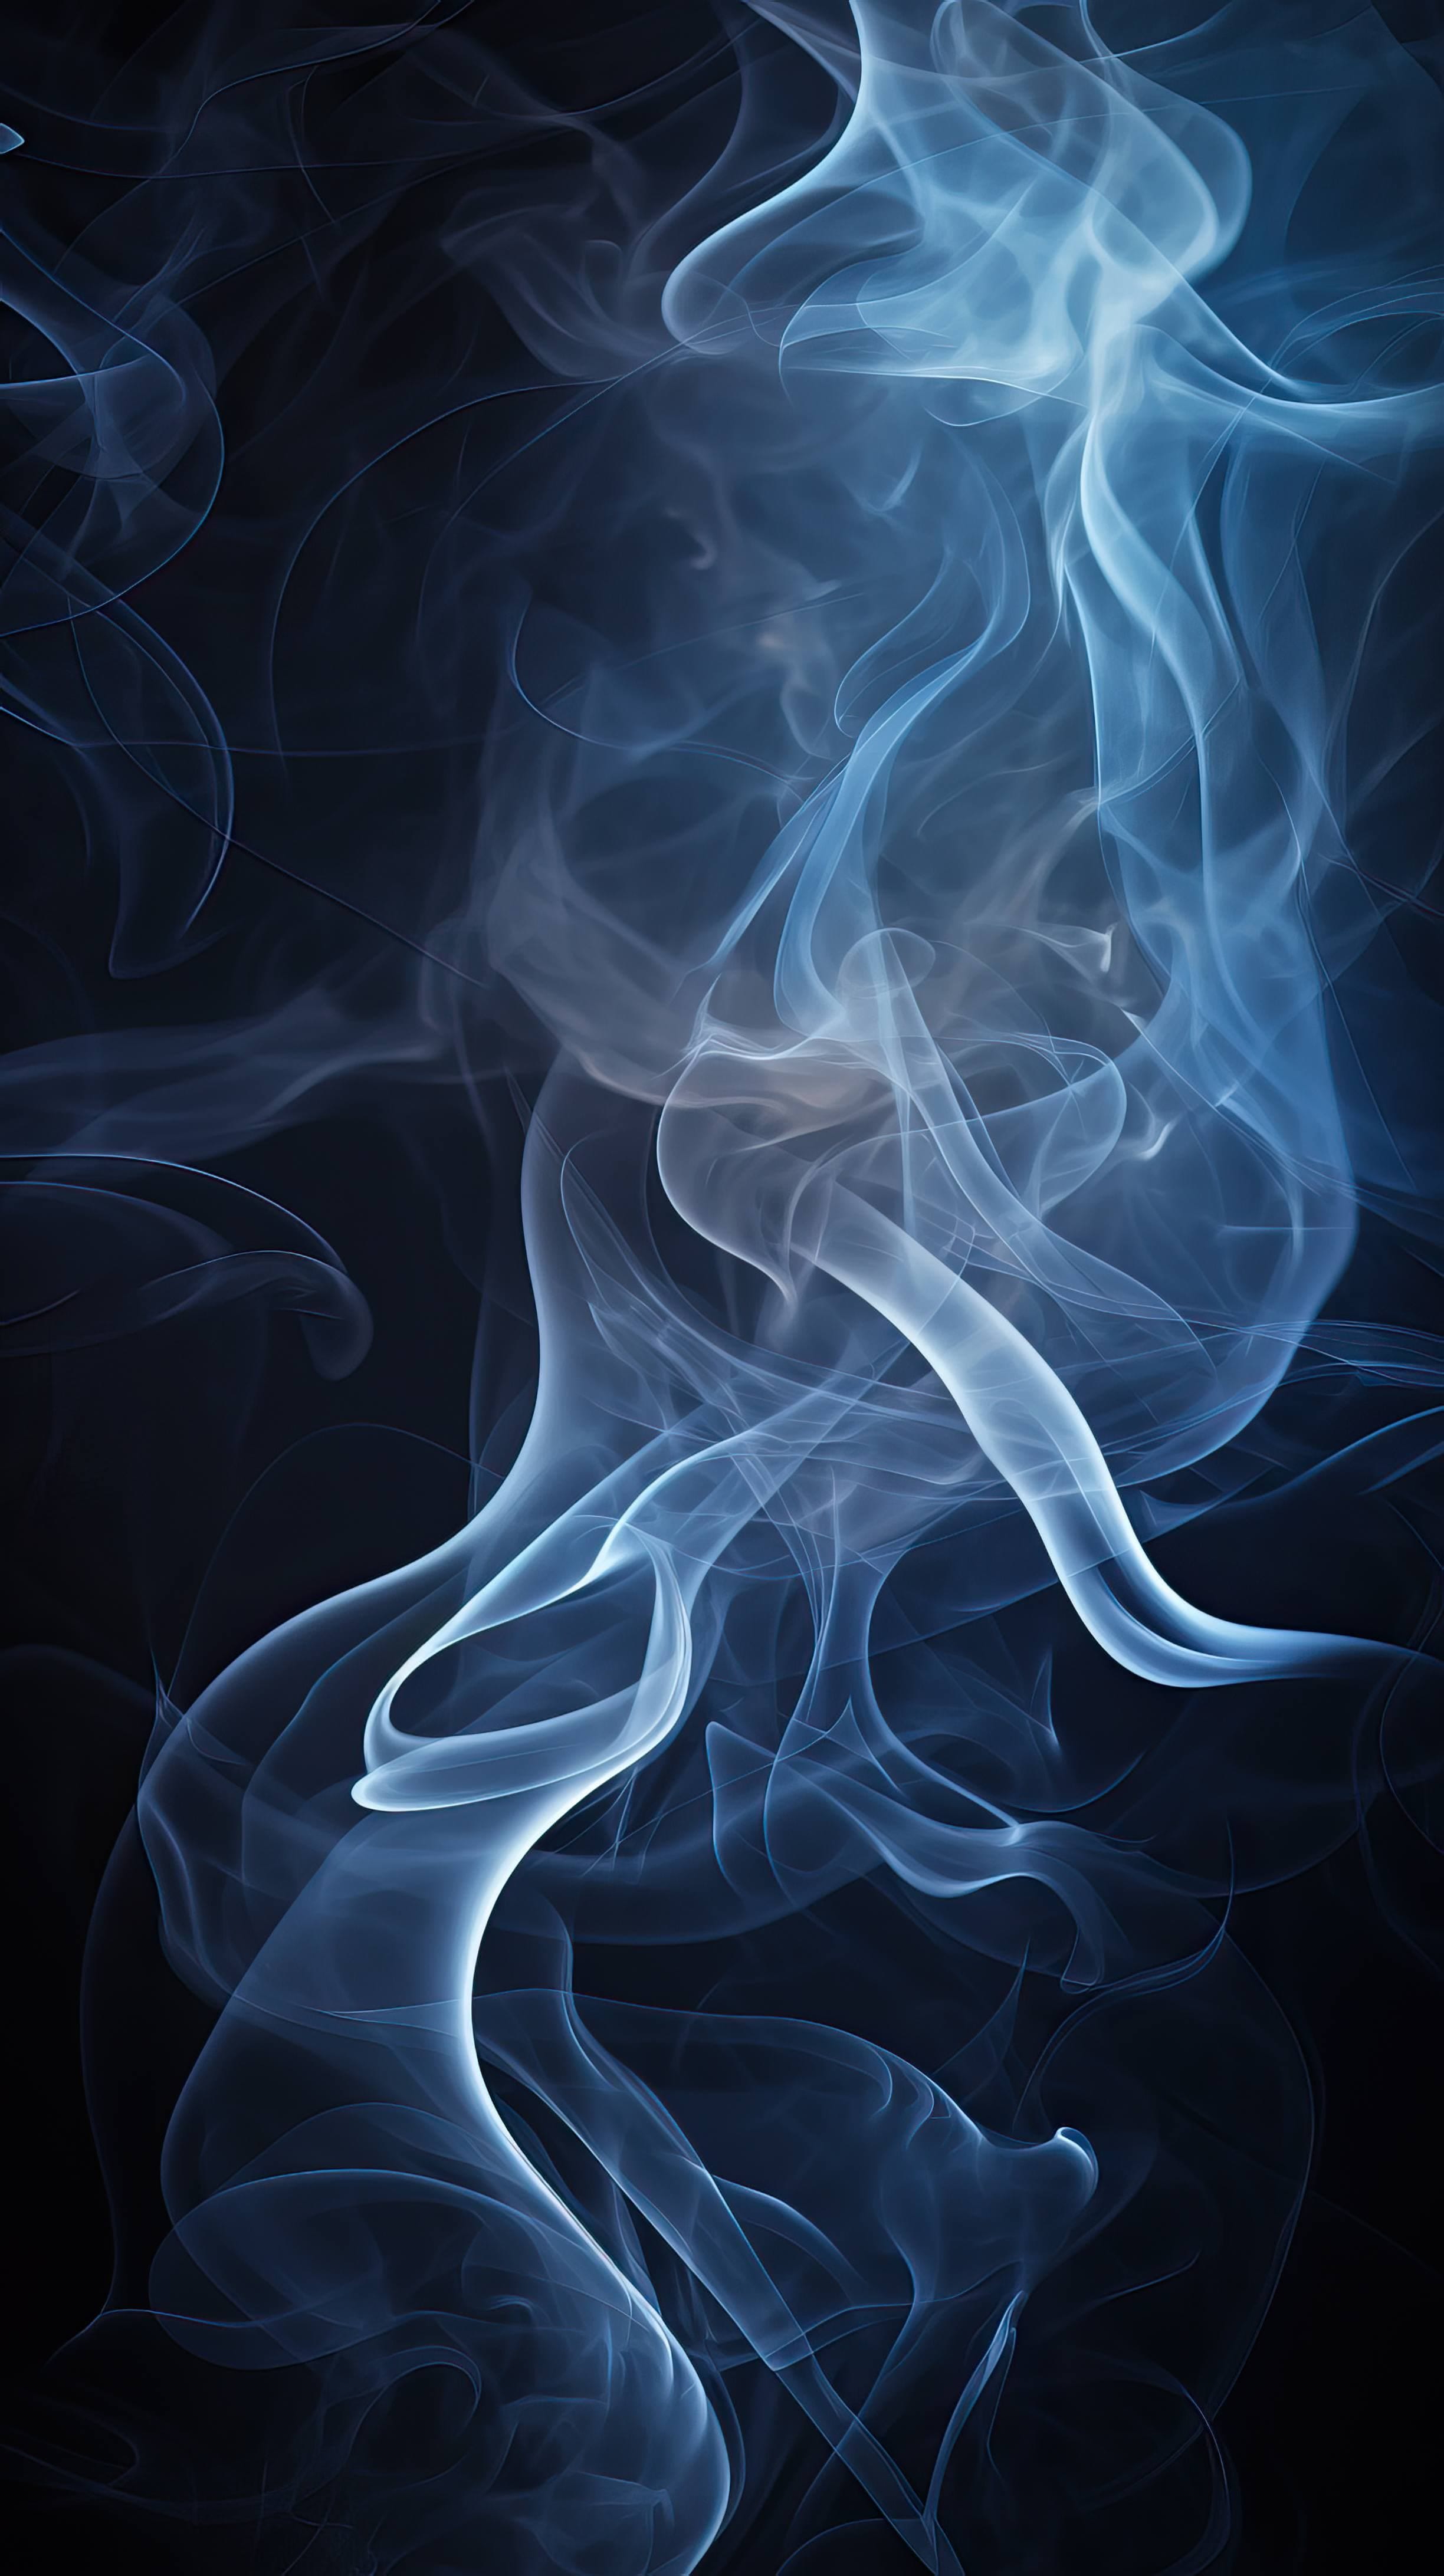 Free AI art image of smoke pattern photography